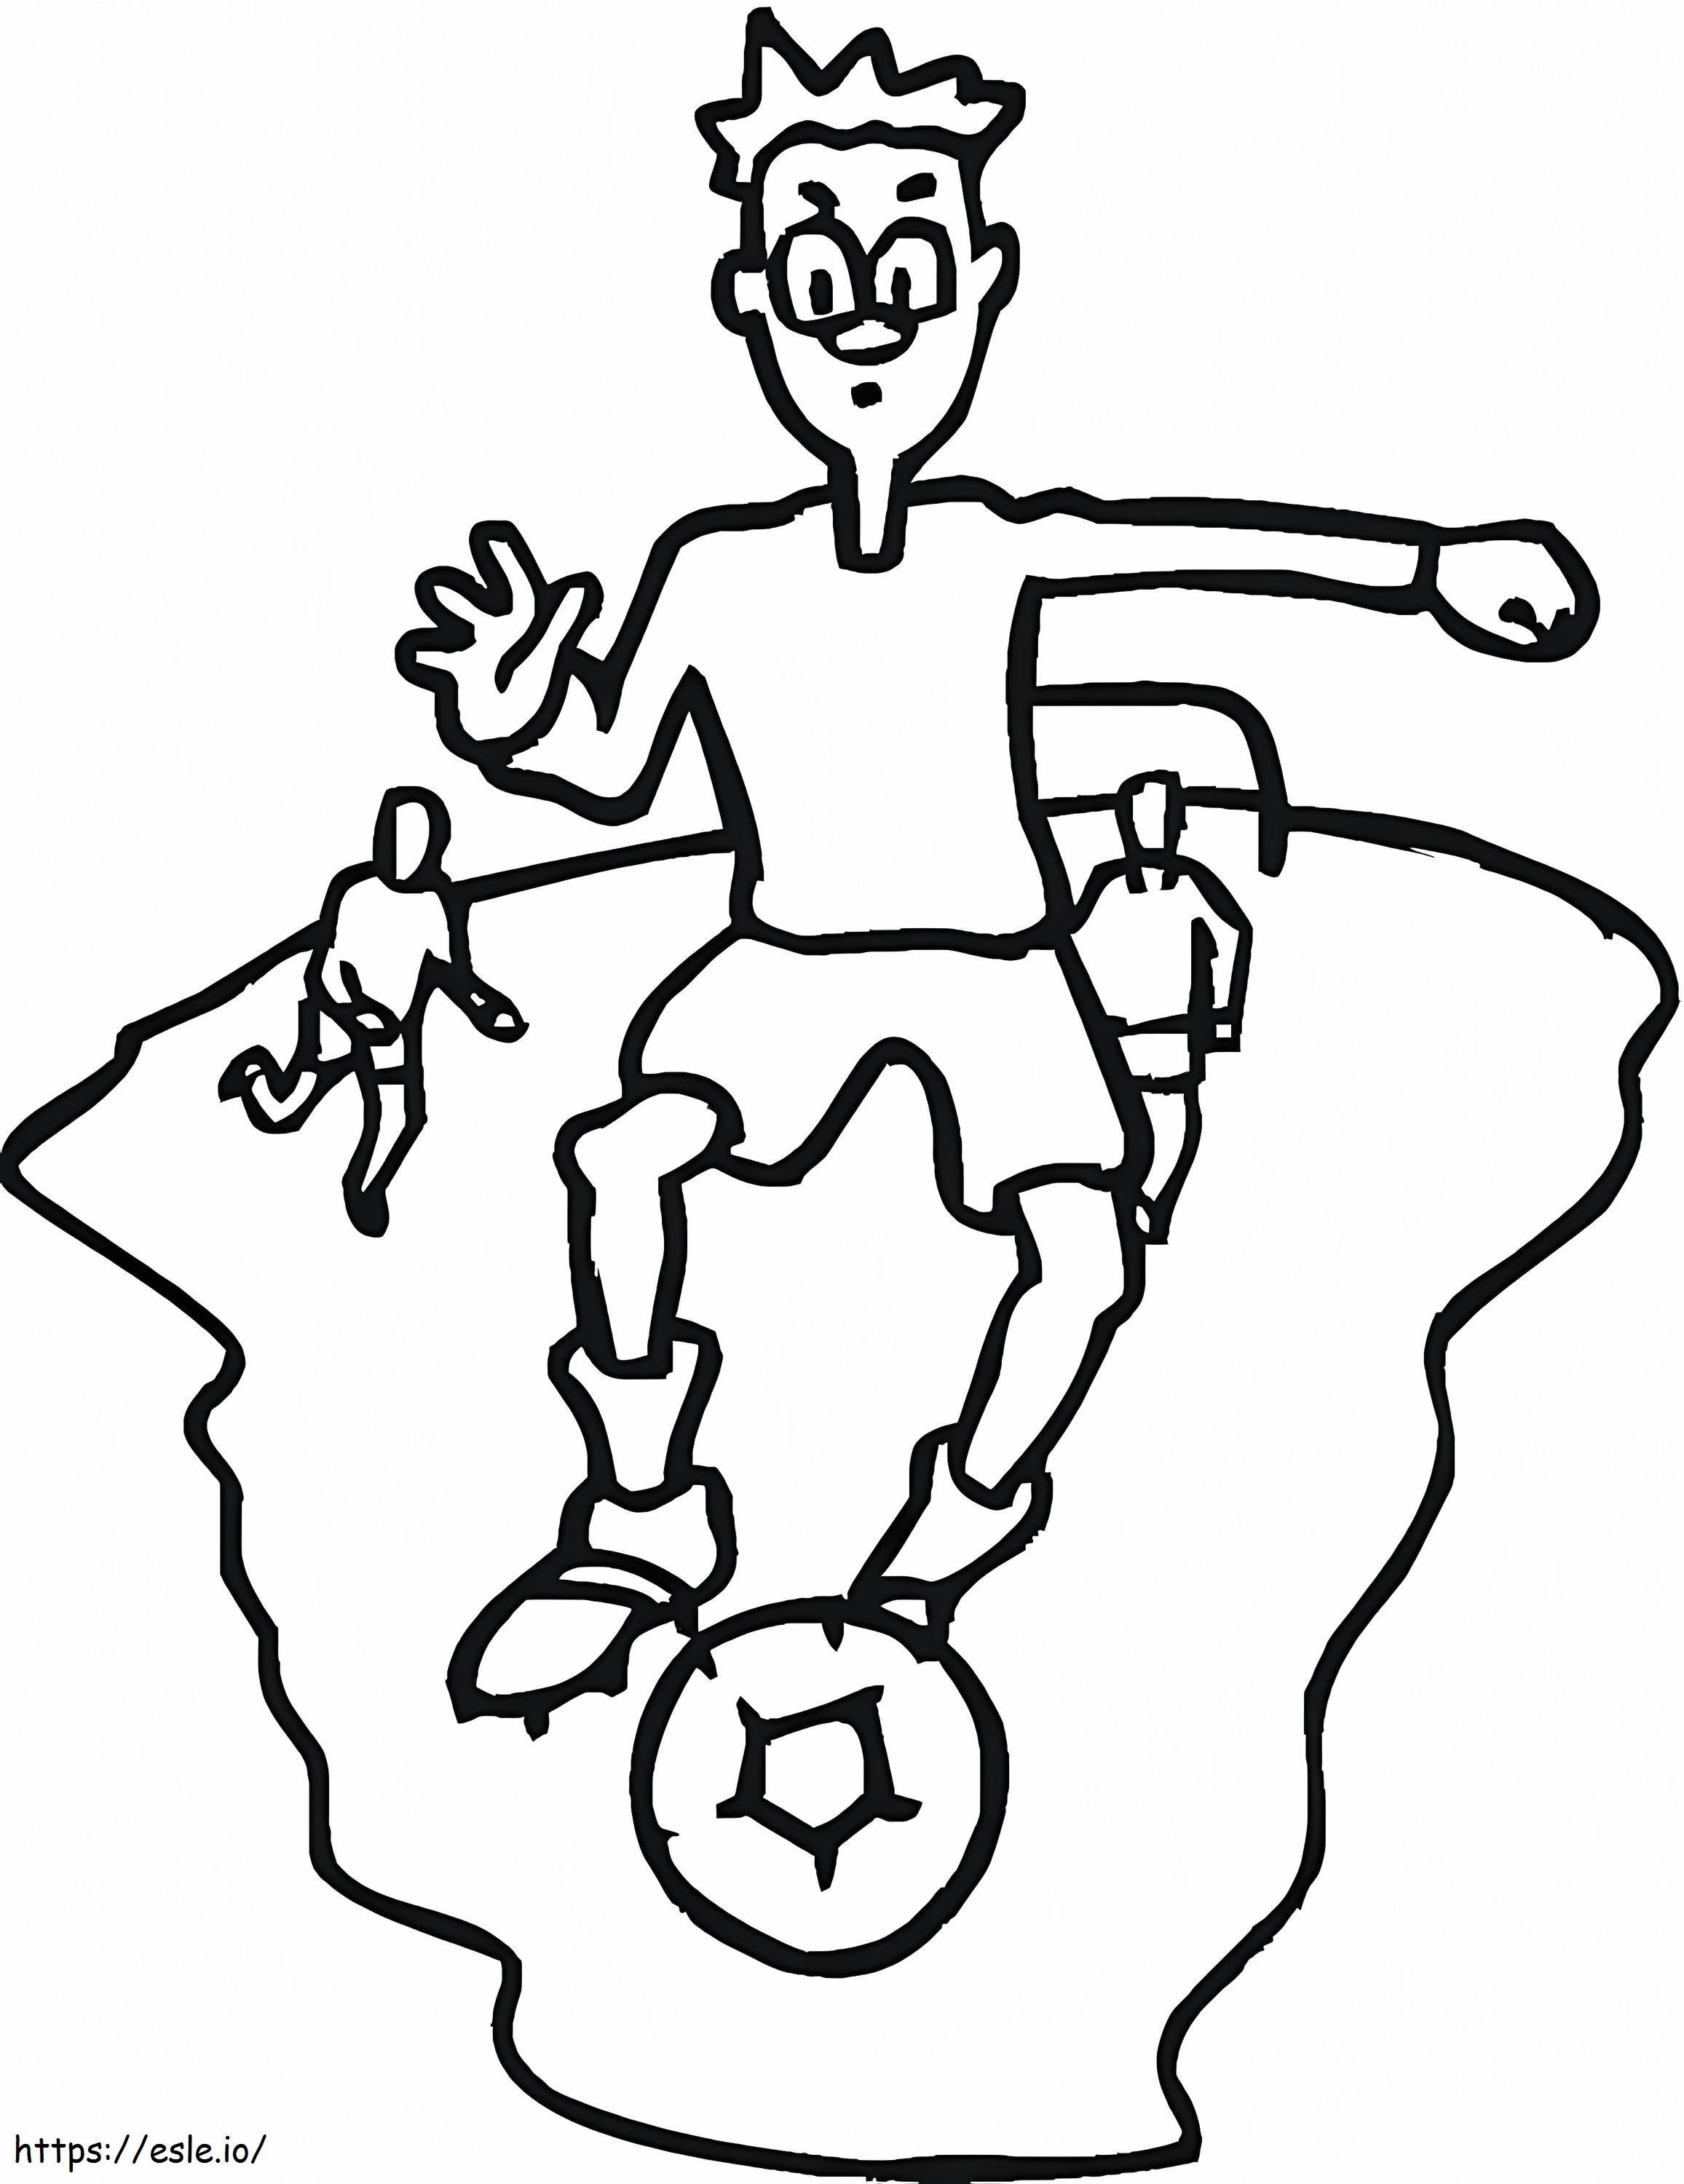 Junge spielt Fußball ausmalbilder